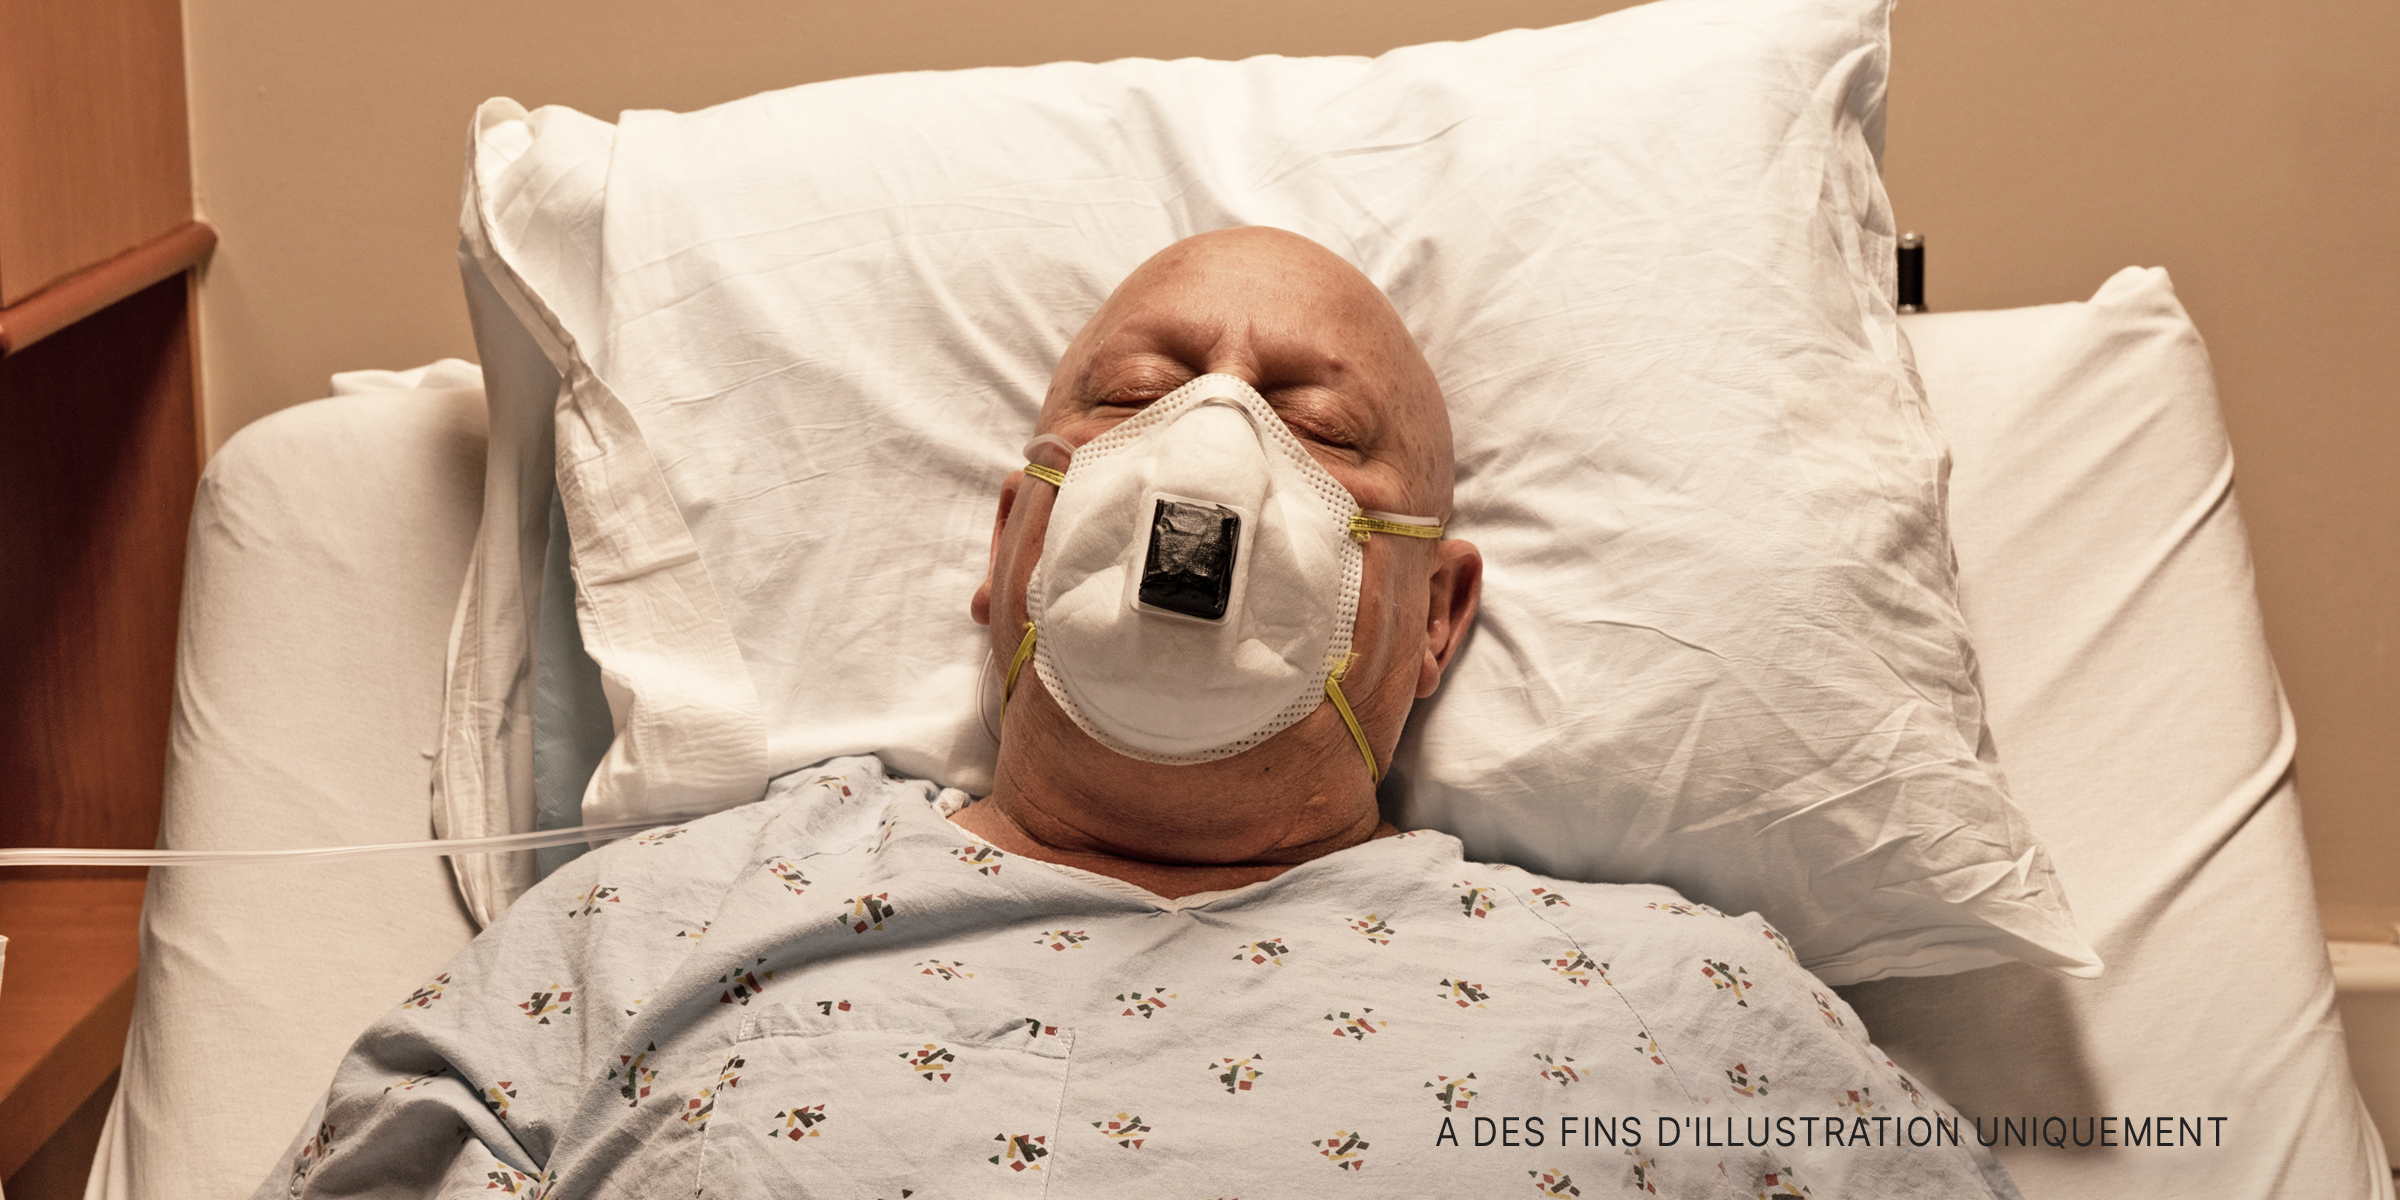 Un homme dormant avec un respirateur. | Source : Shutterstock